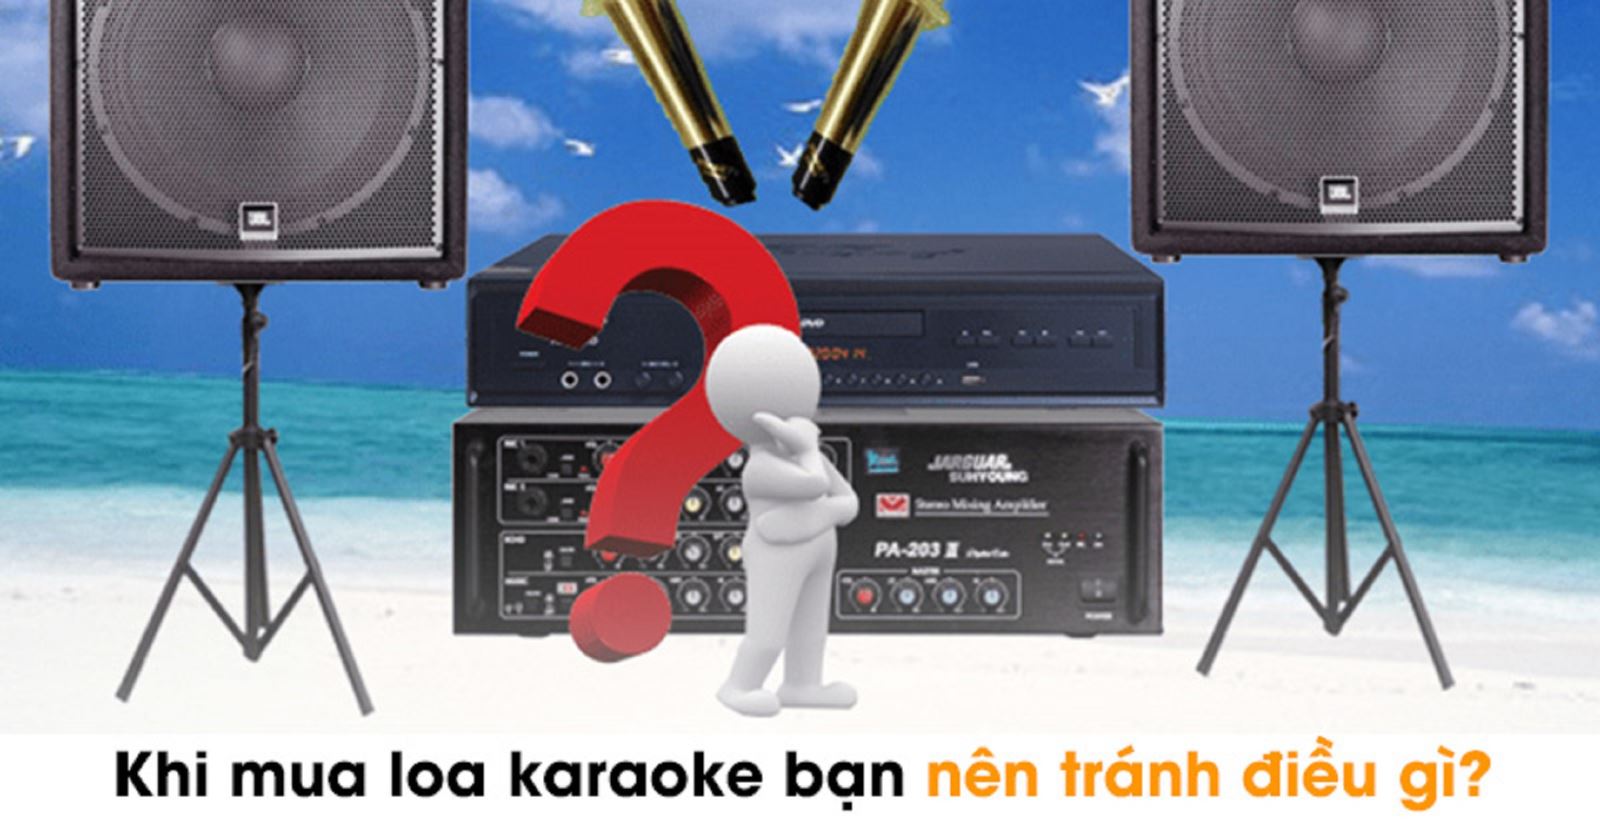 Khi mua loa karaoke bạn nên tránh điều gì?